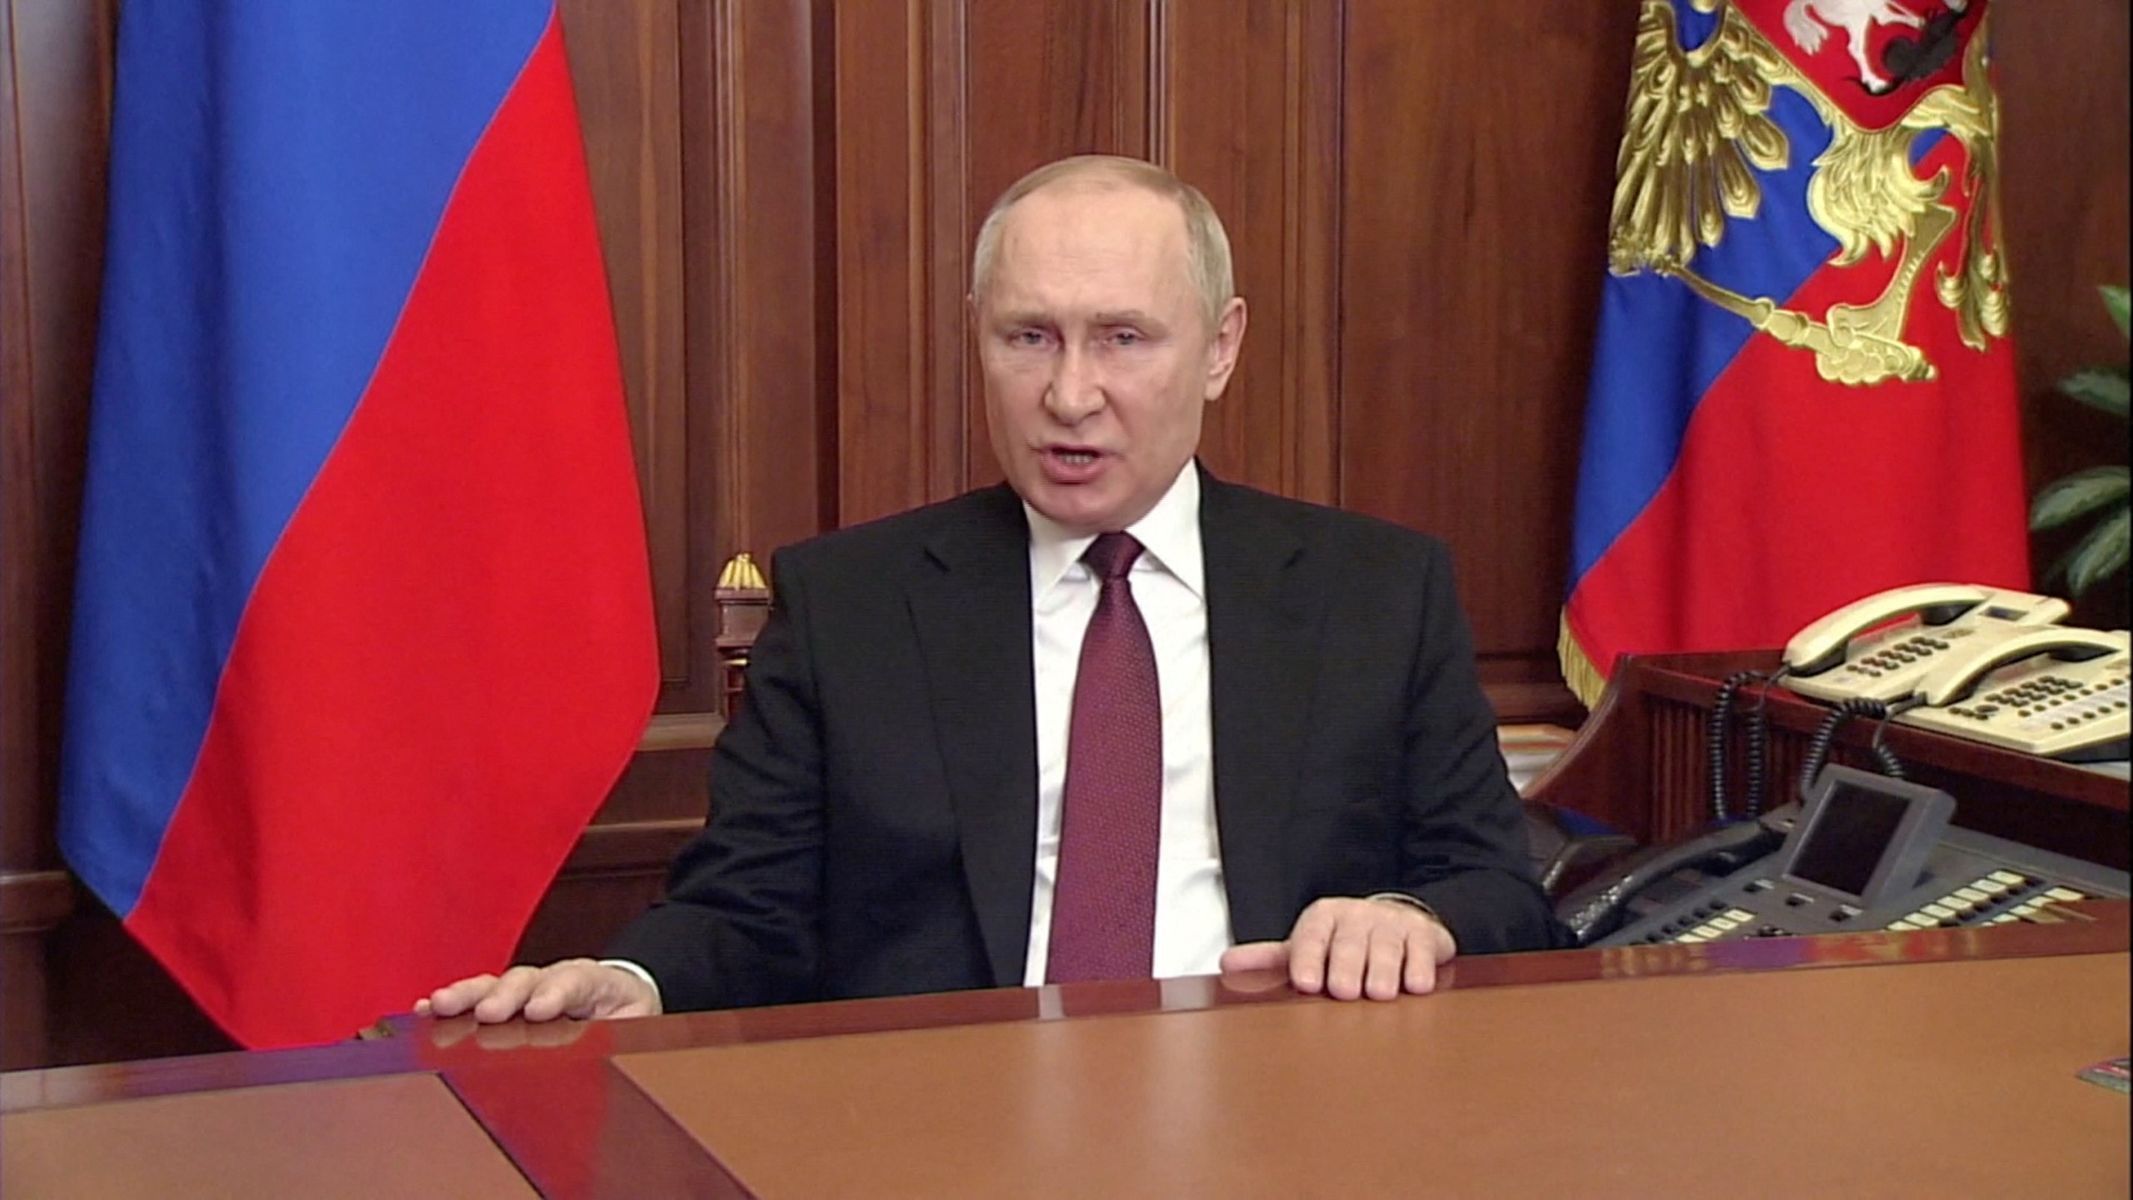 Putin v projevu, oznamujícím válku proti Ukrajině.